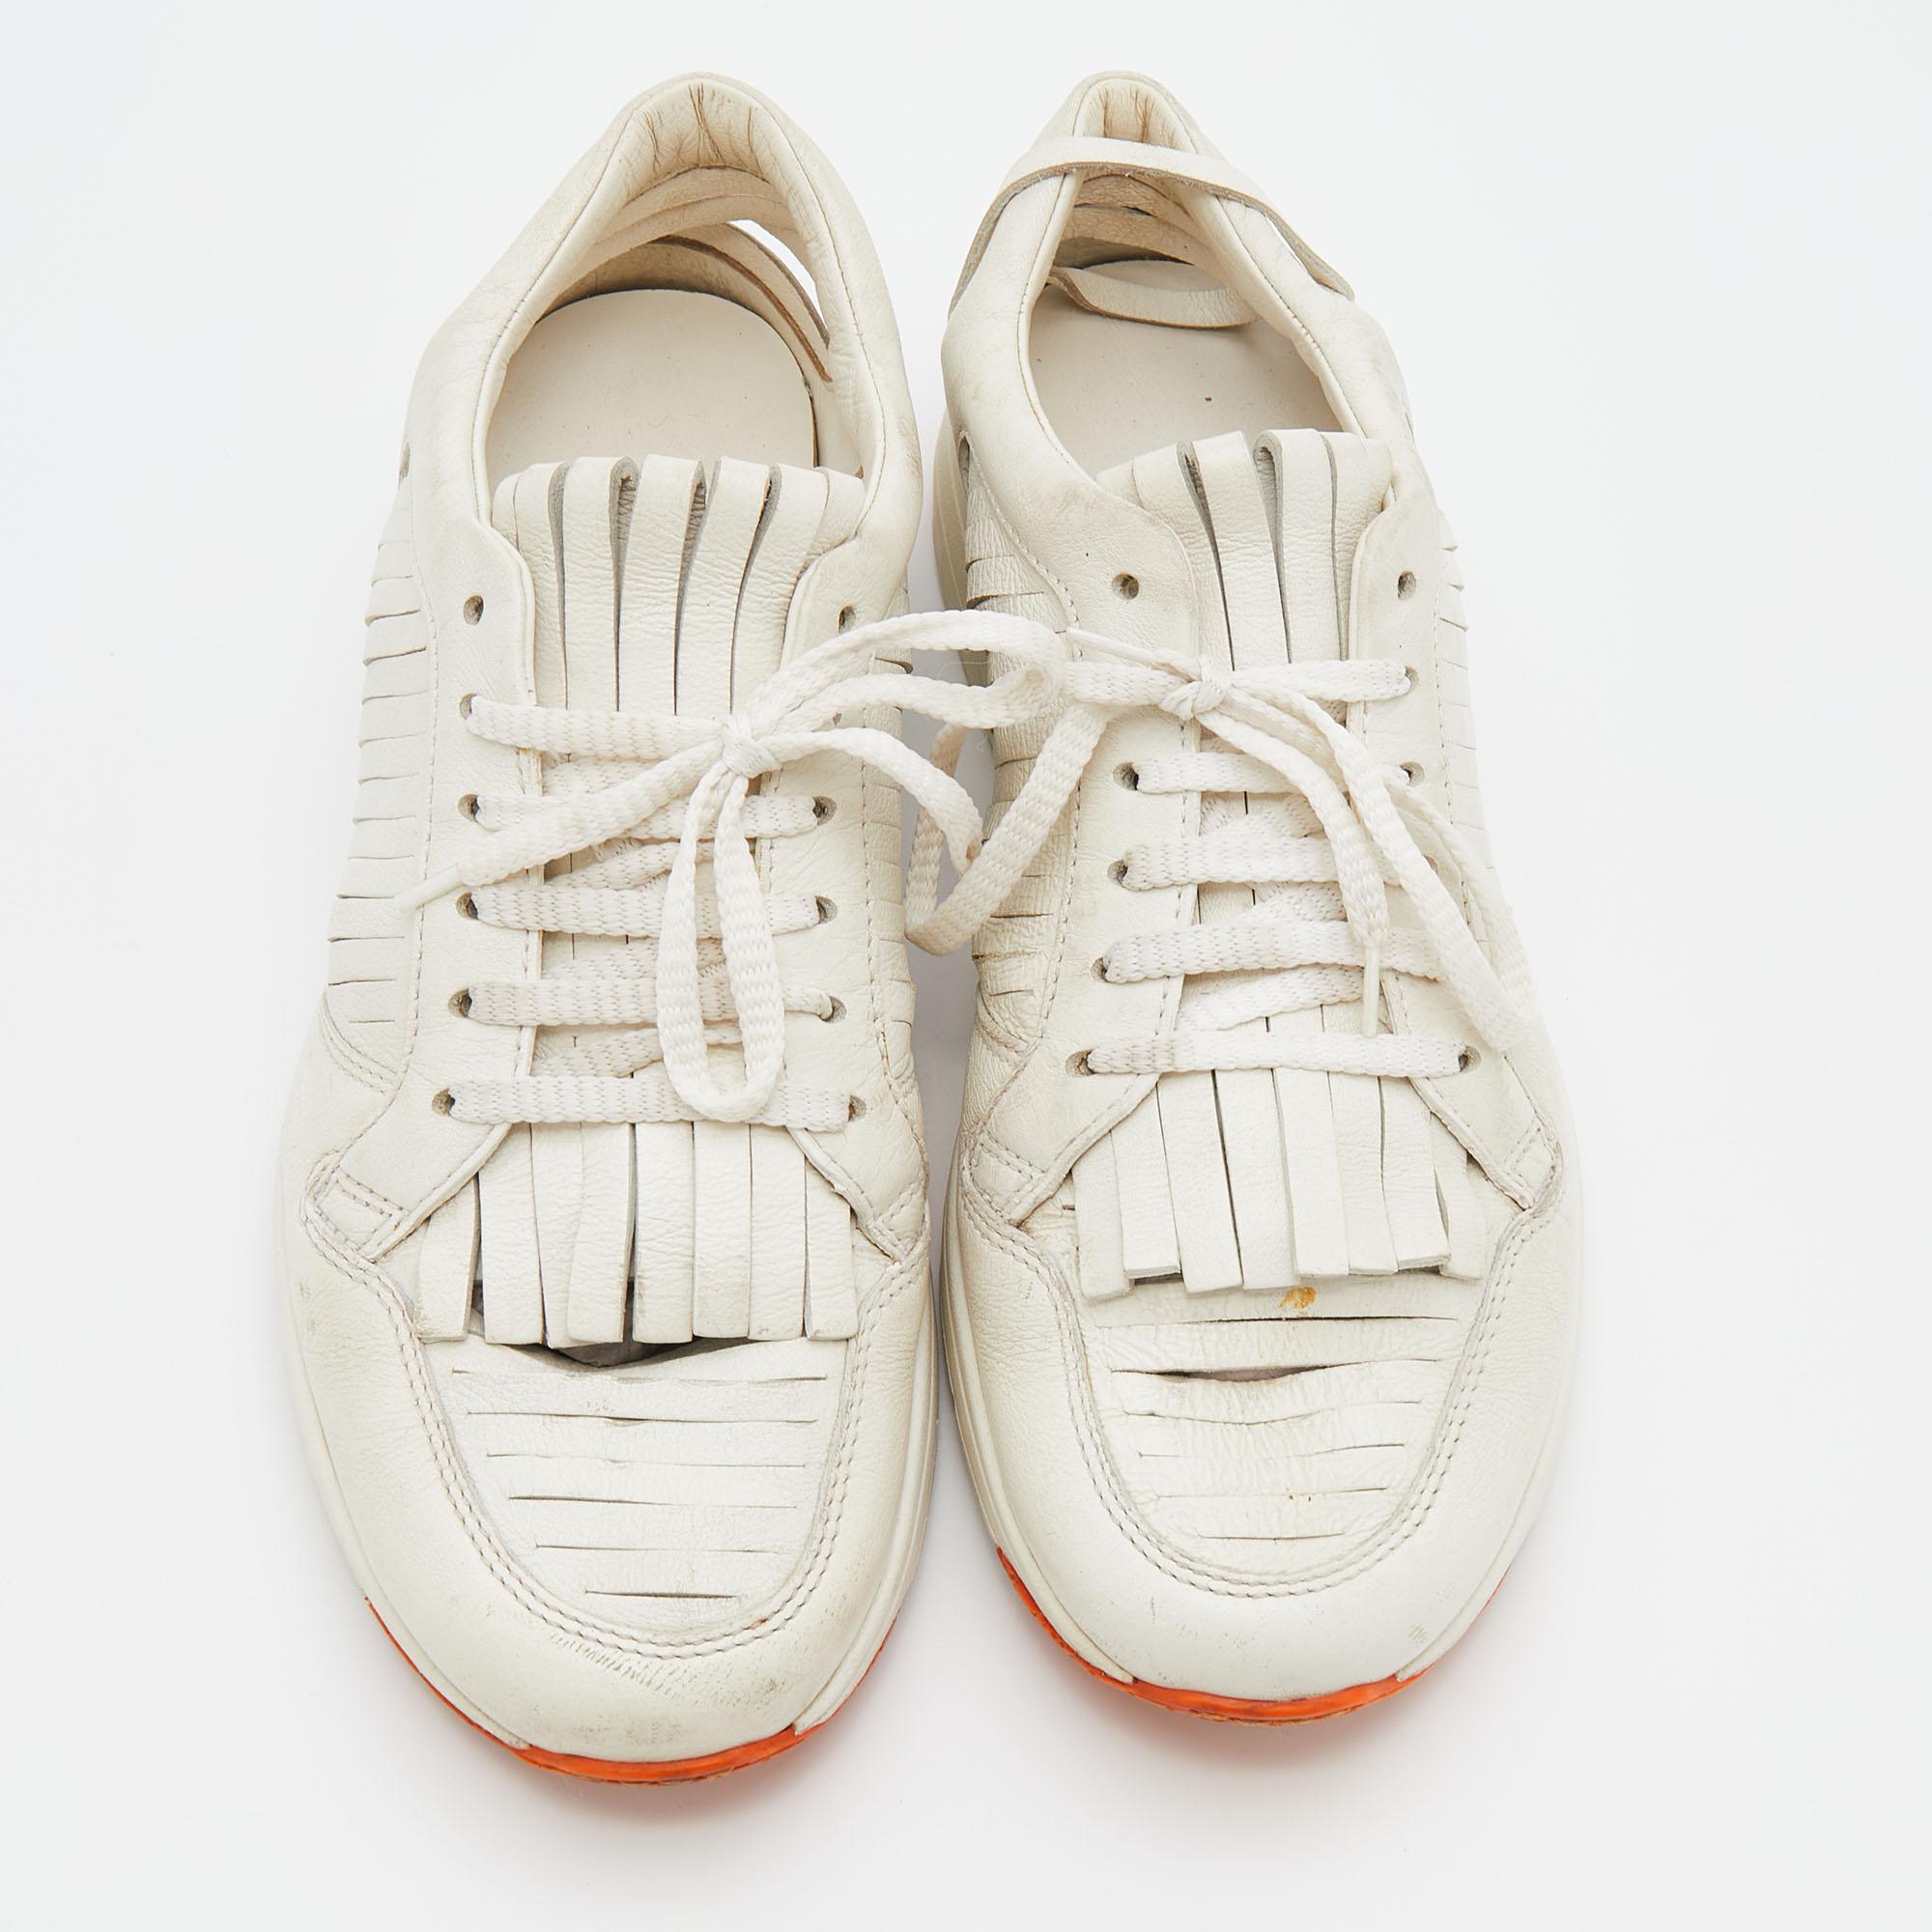 Diese schicken weißen Sneakers von Gucci sind genau das, was Sie für Ihren Look brauchen. Das aus Leder gefertigte Paar ist mit Schnürsenkeln ausgestattet und wird von Quasten begleitet. Er verfügt über bequeme Einlegesohlen und ist mit einer